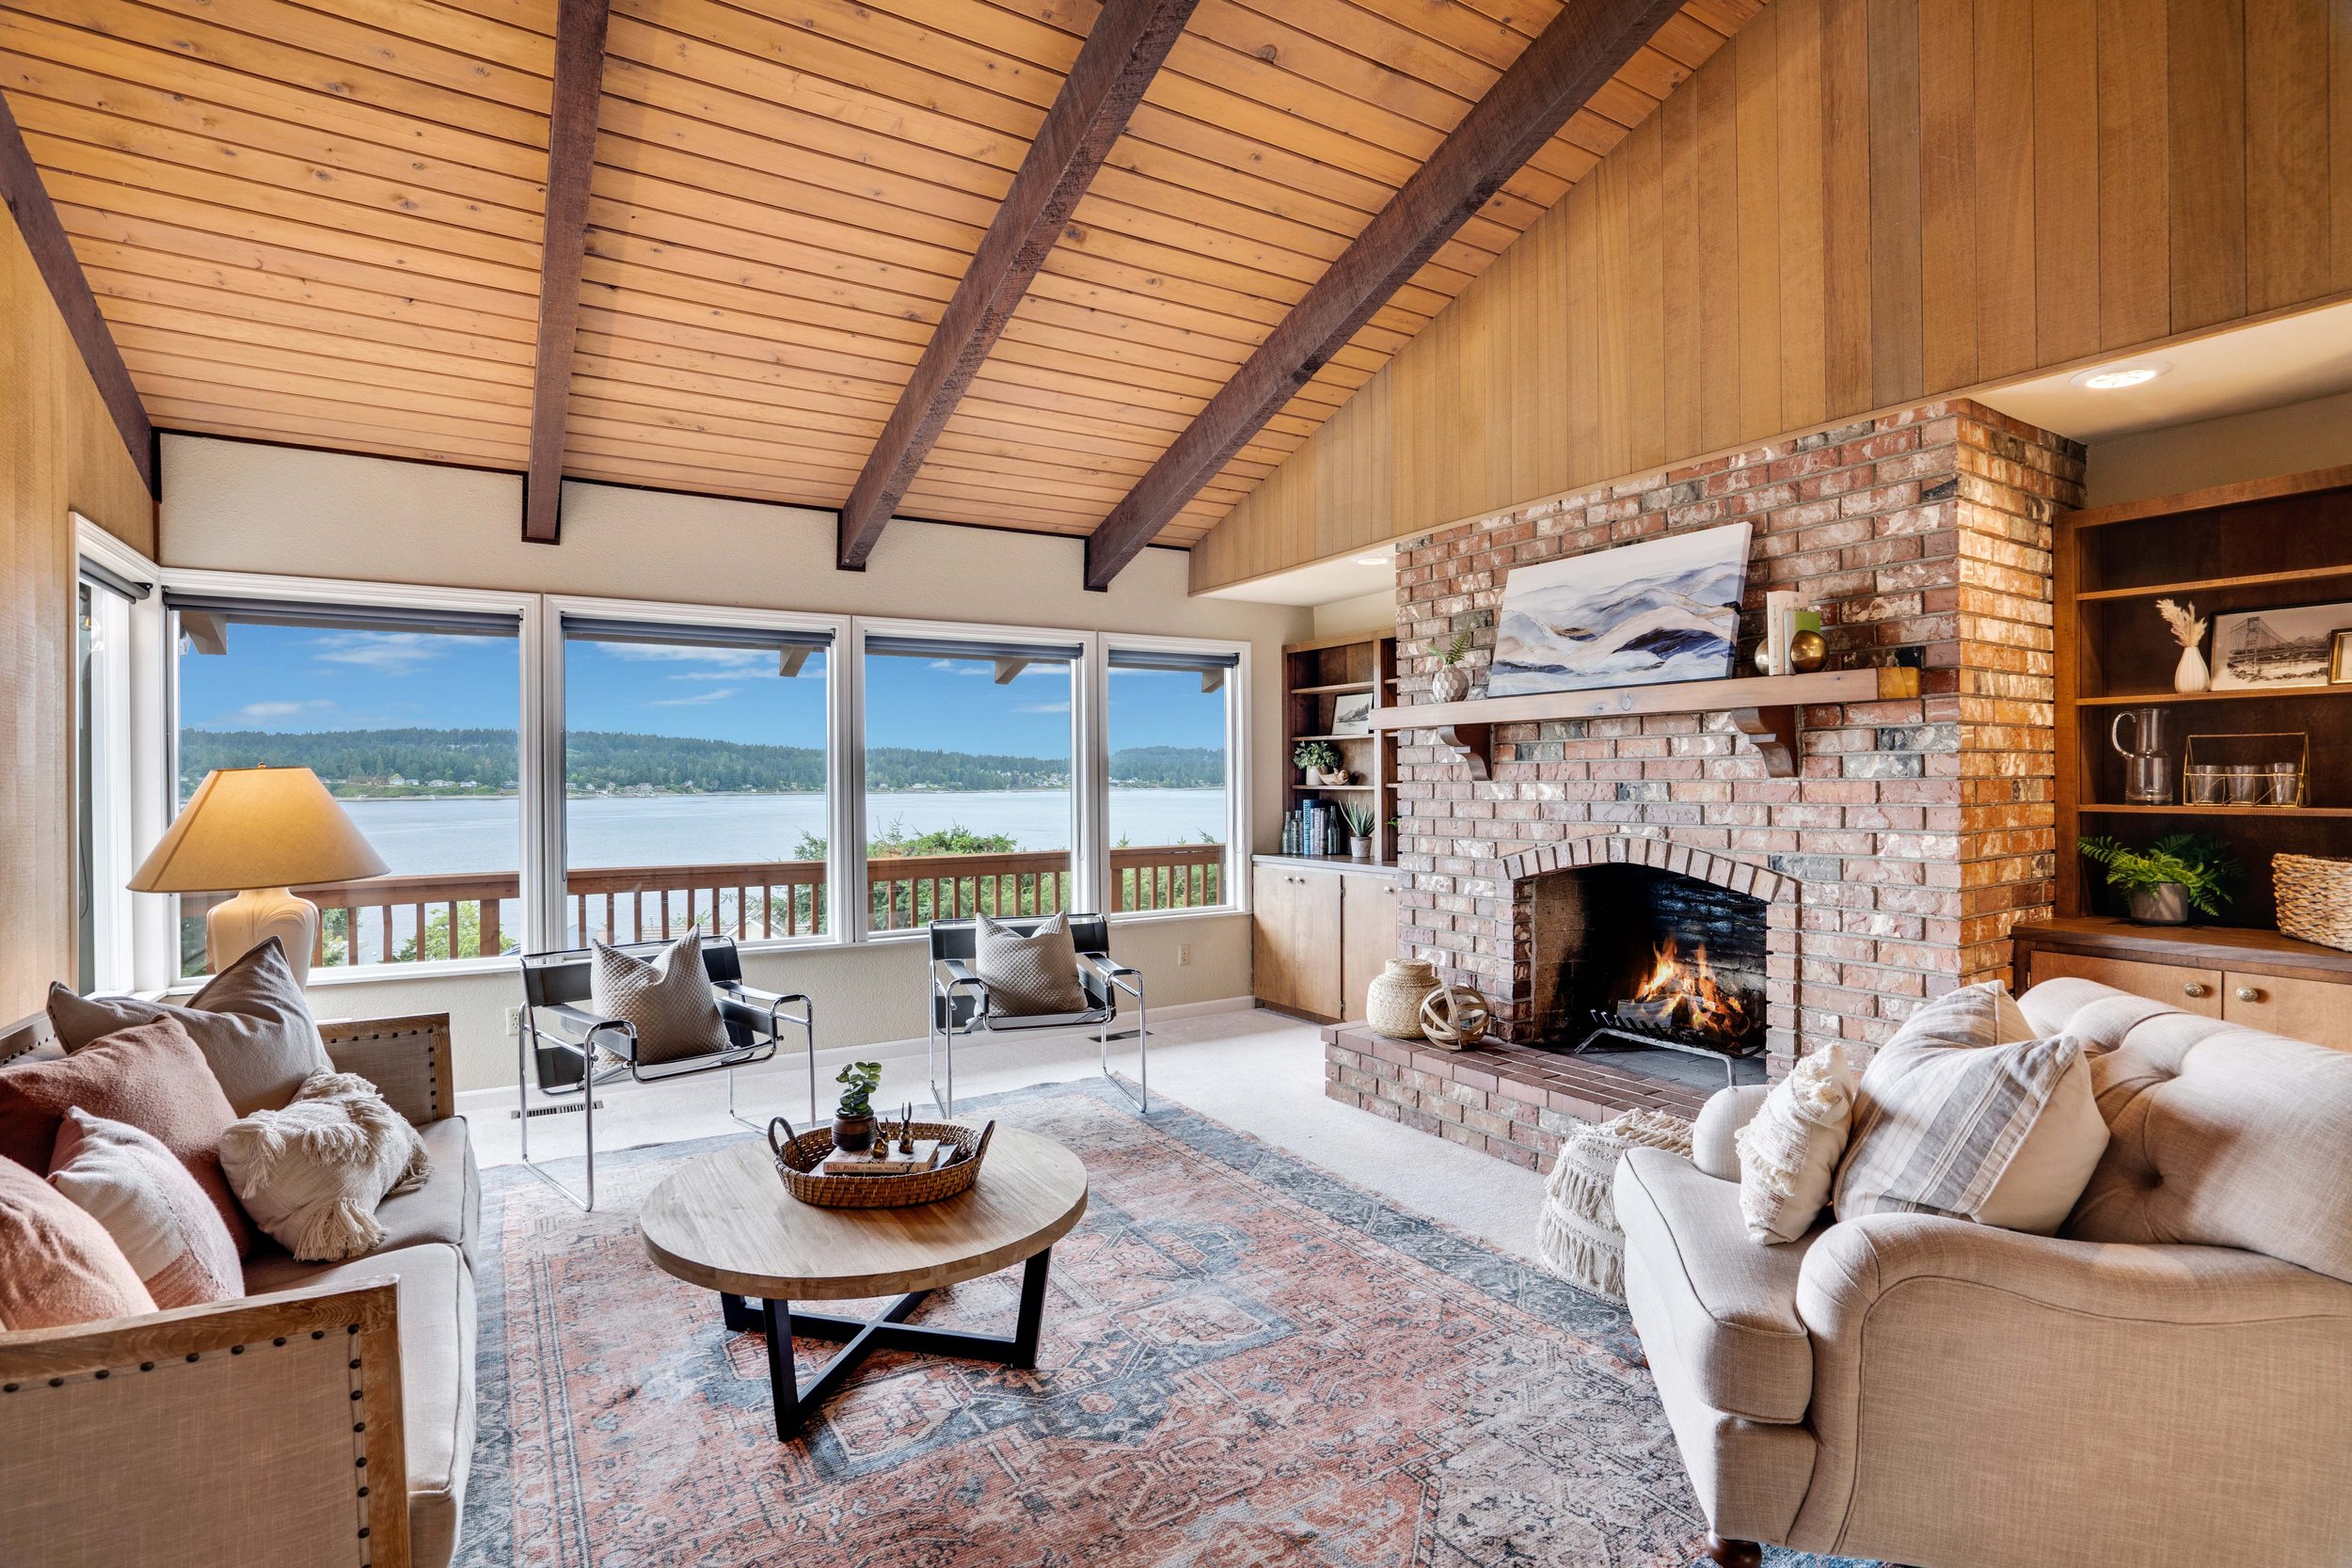 Sold - Point Fosdick Water Views — Michael Duggan - Tacoma Homes